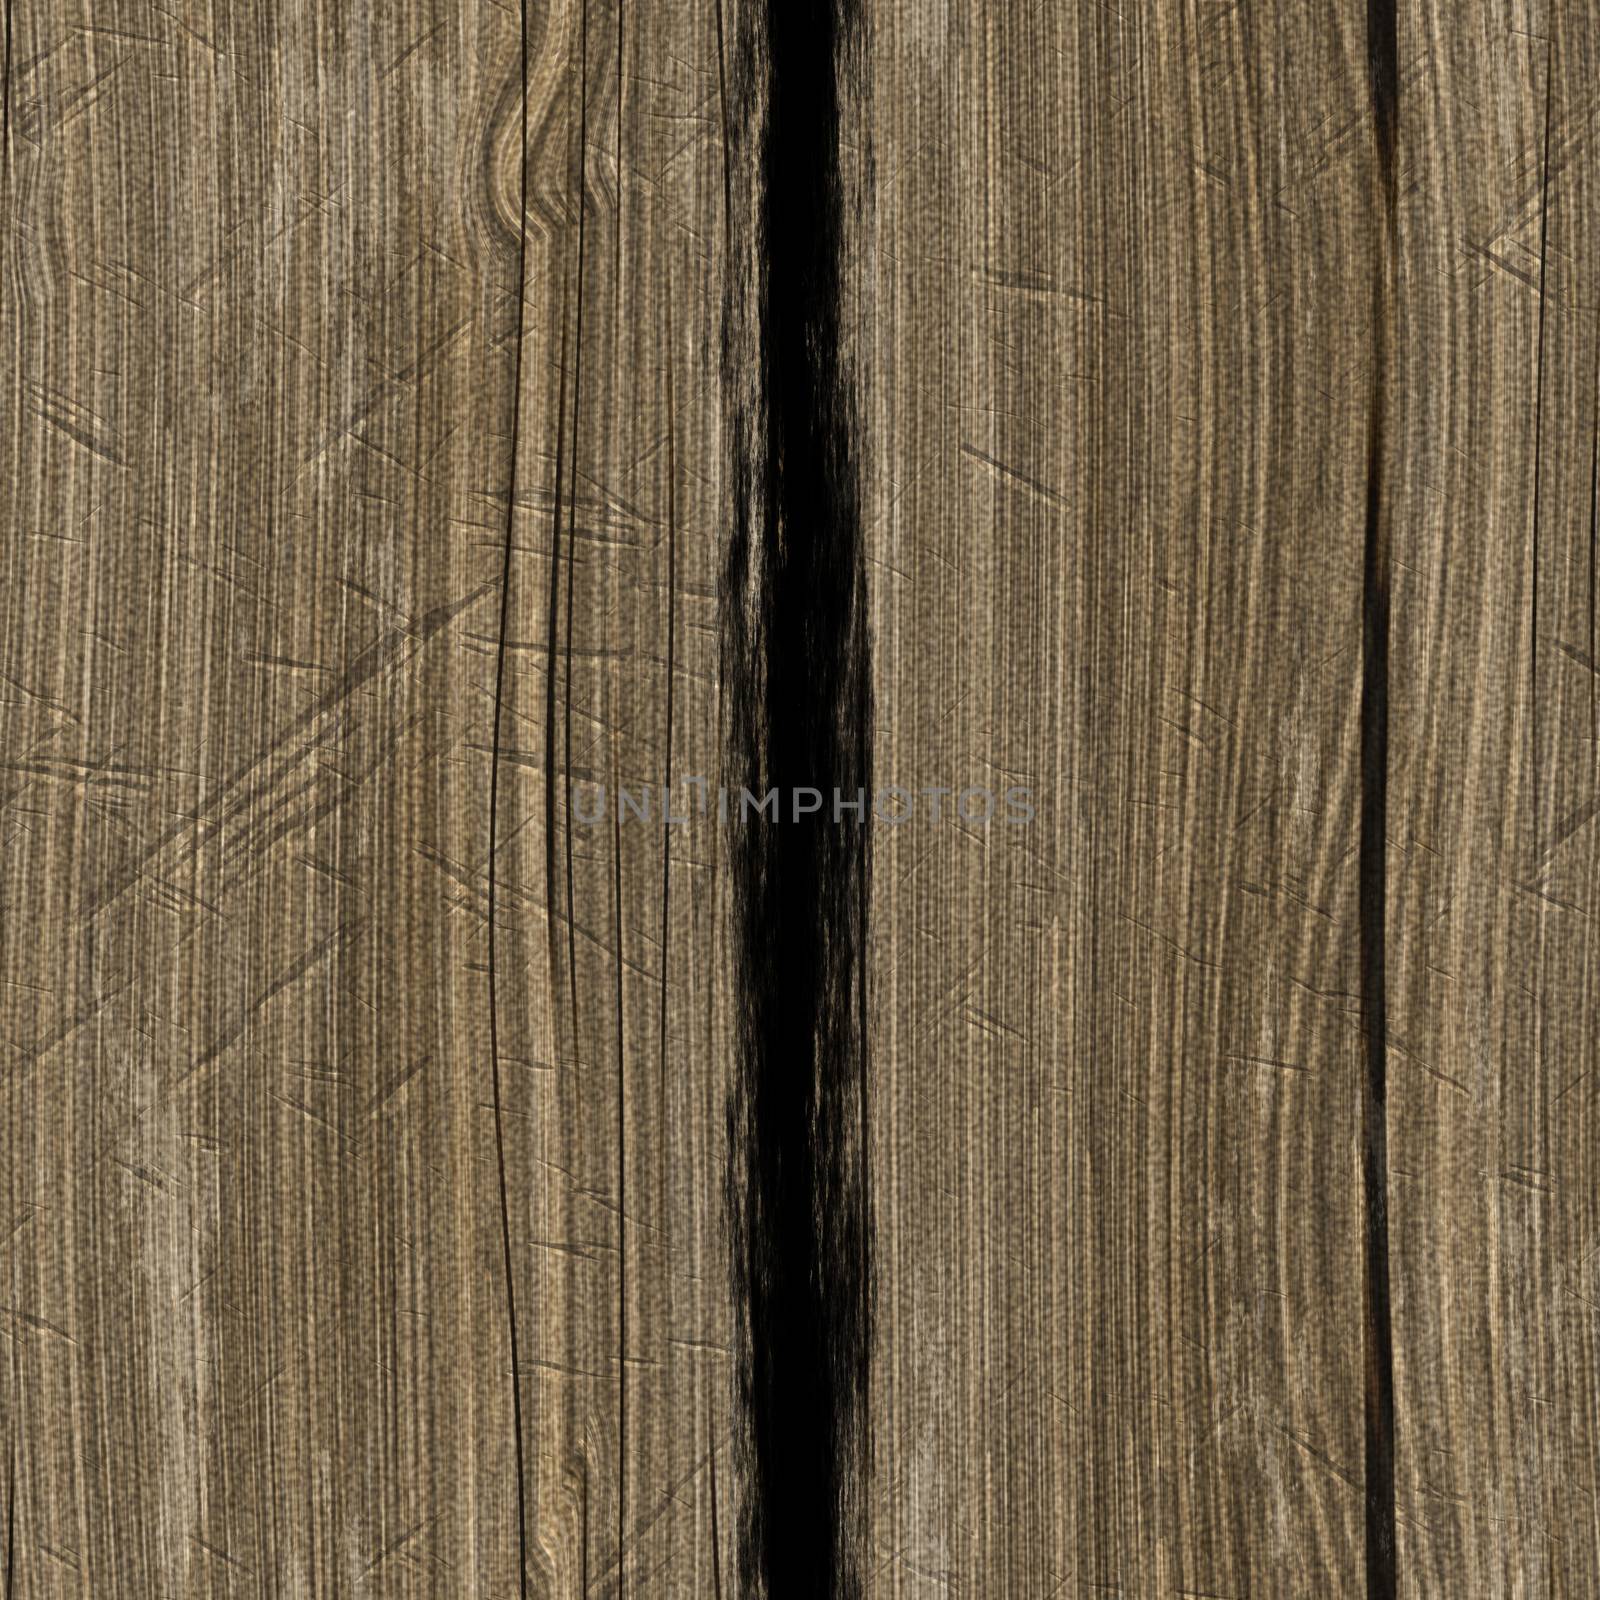 Rough wood by Nanisimova